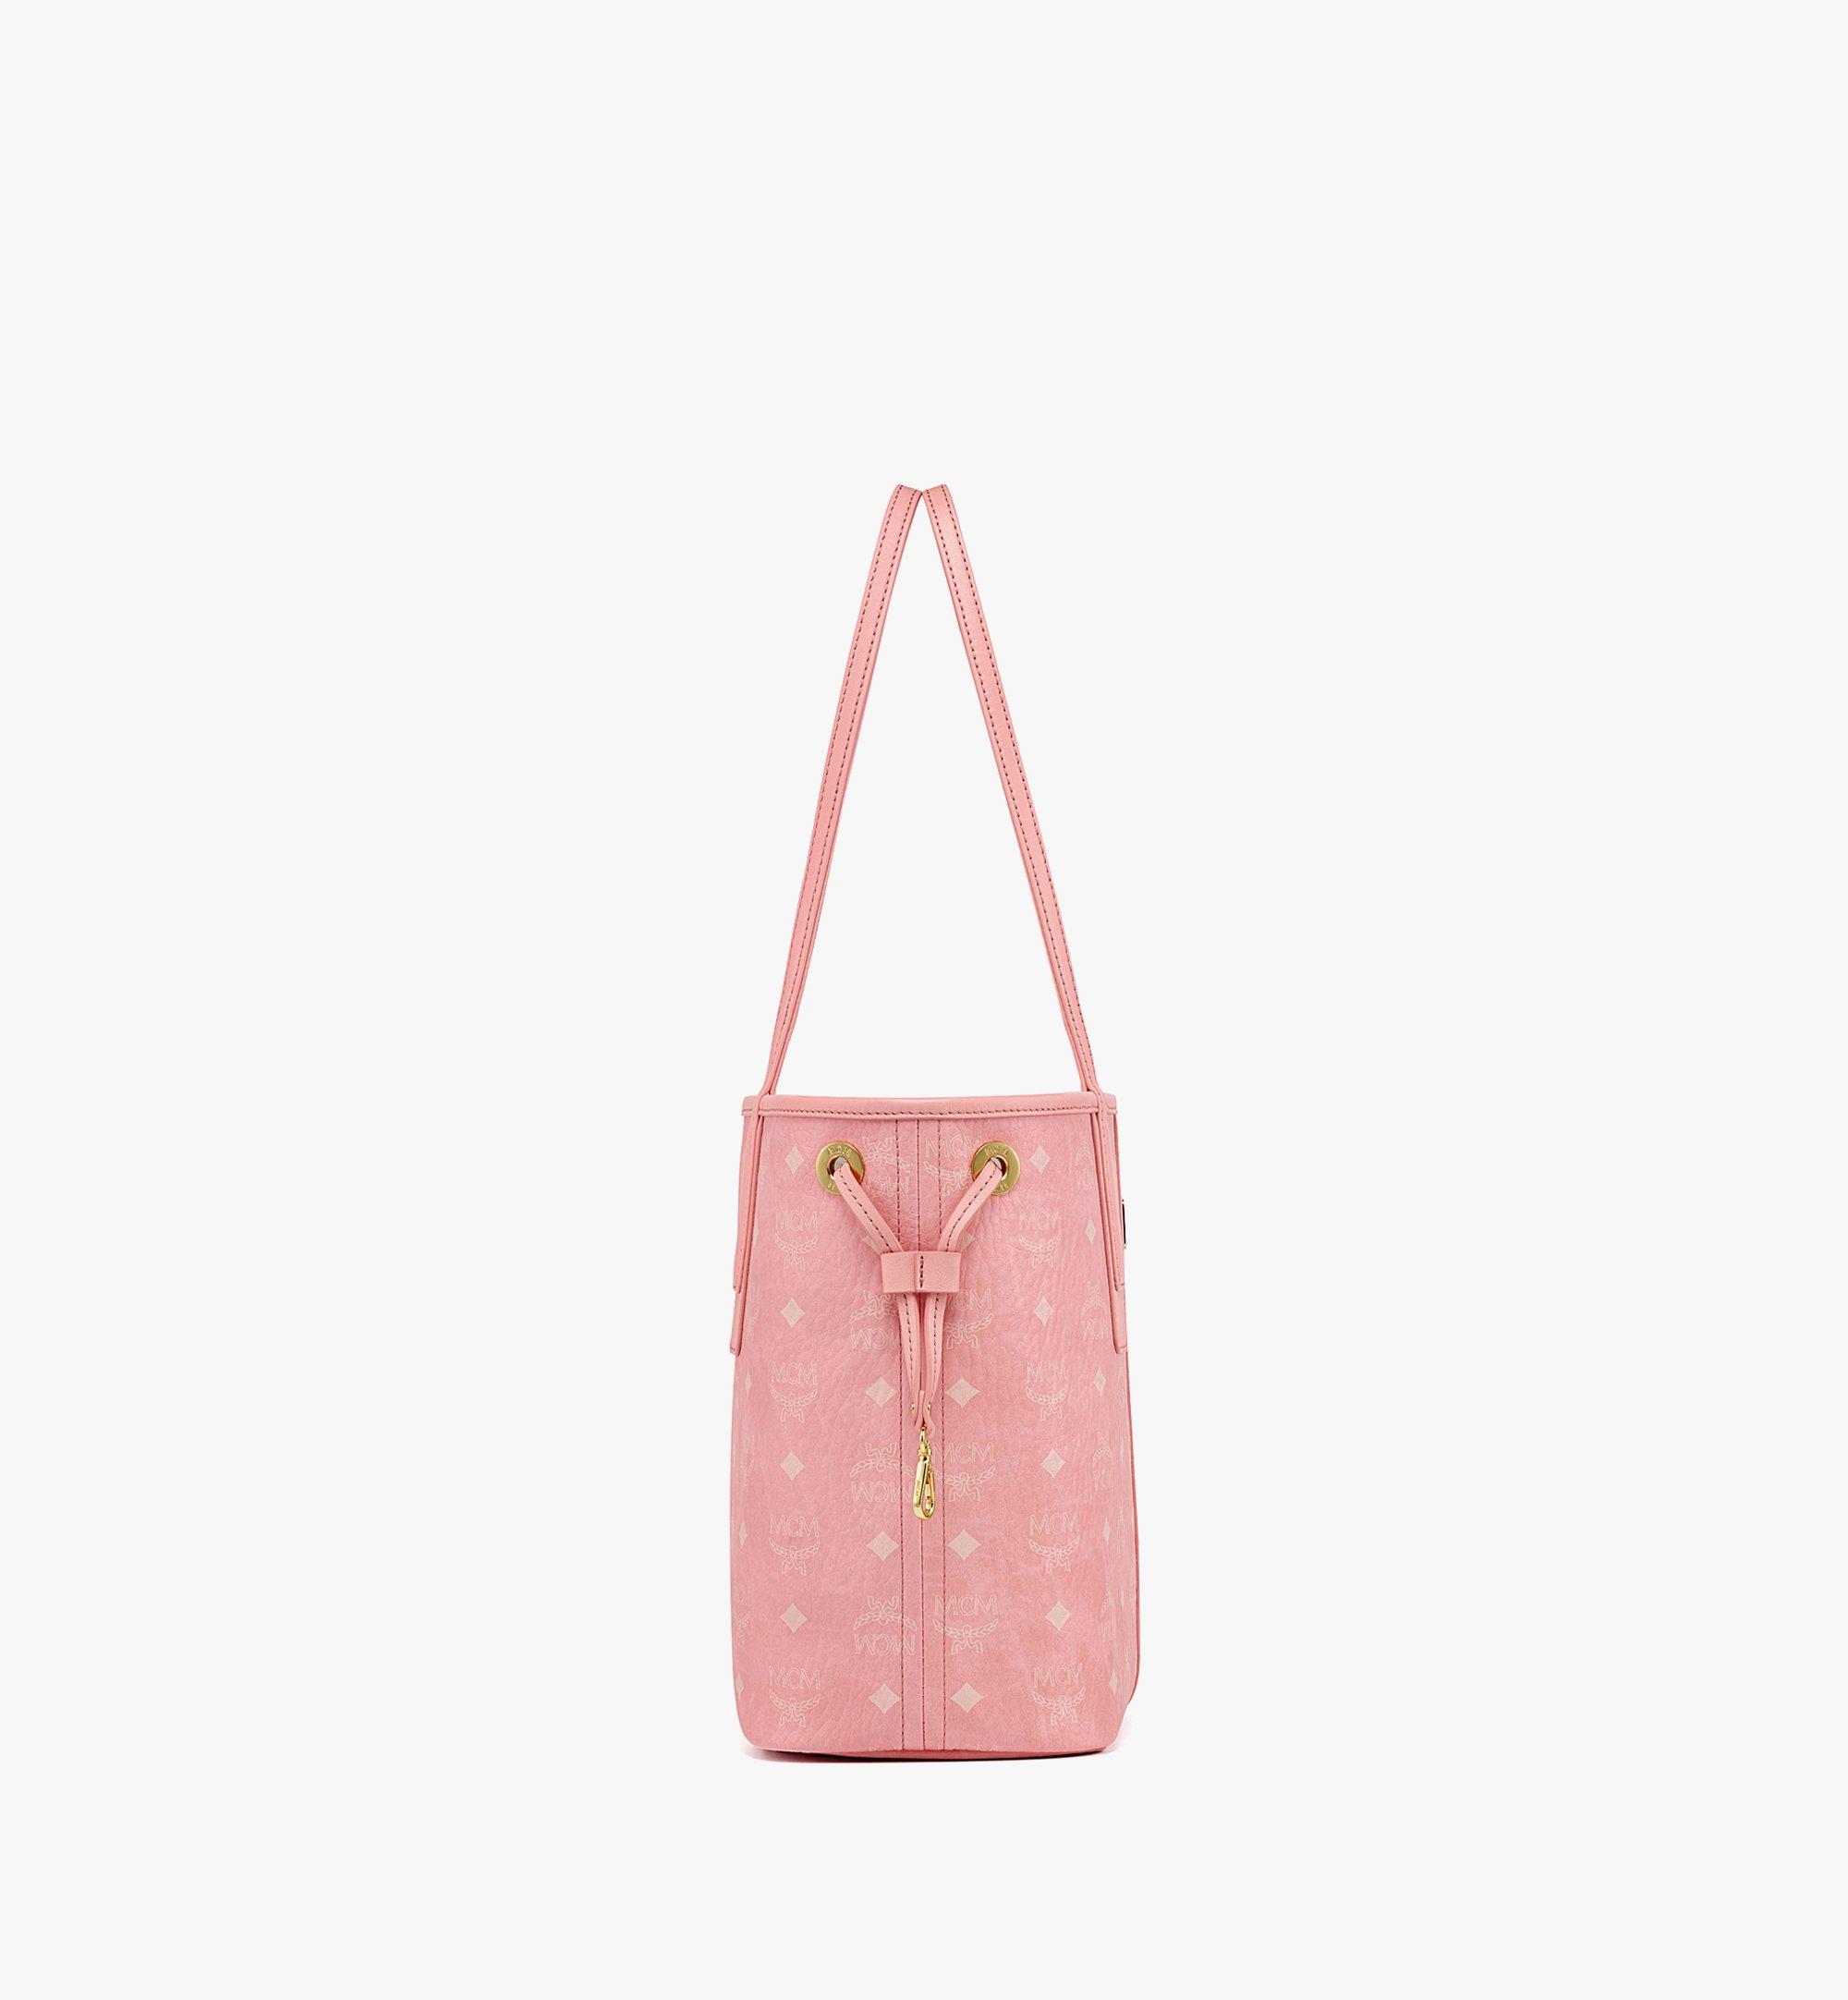 Medium Reversible Liz Shopper in Visetos Pink